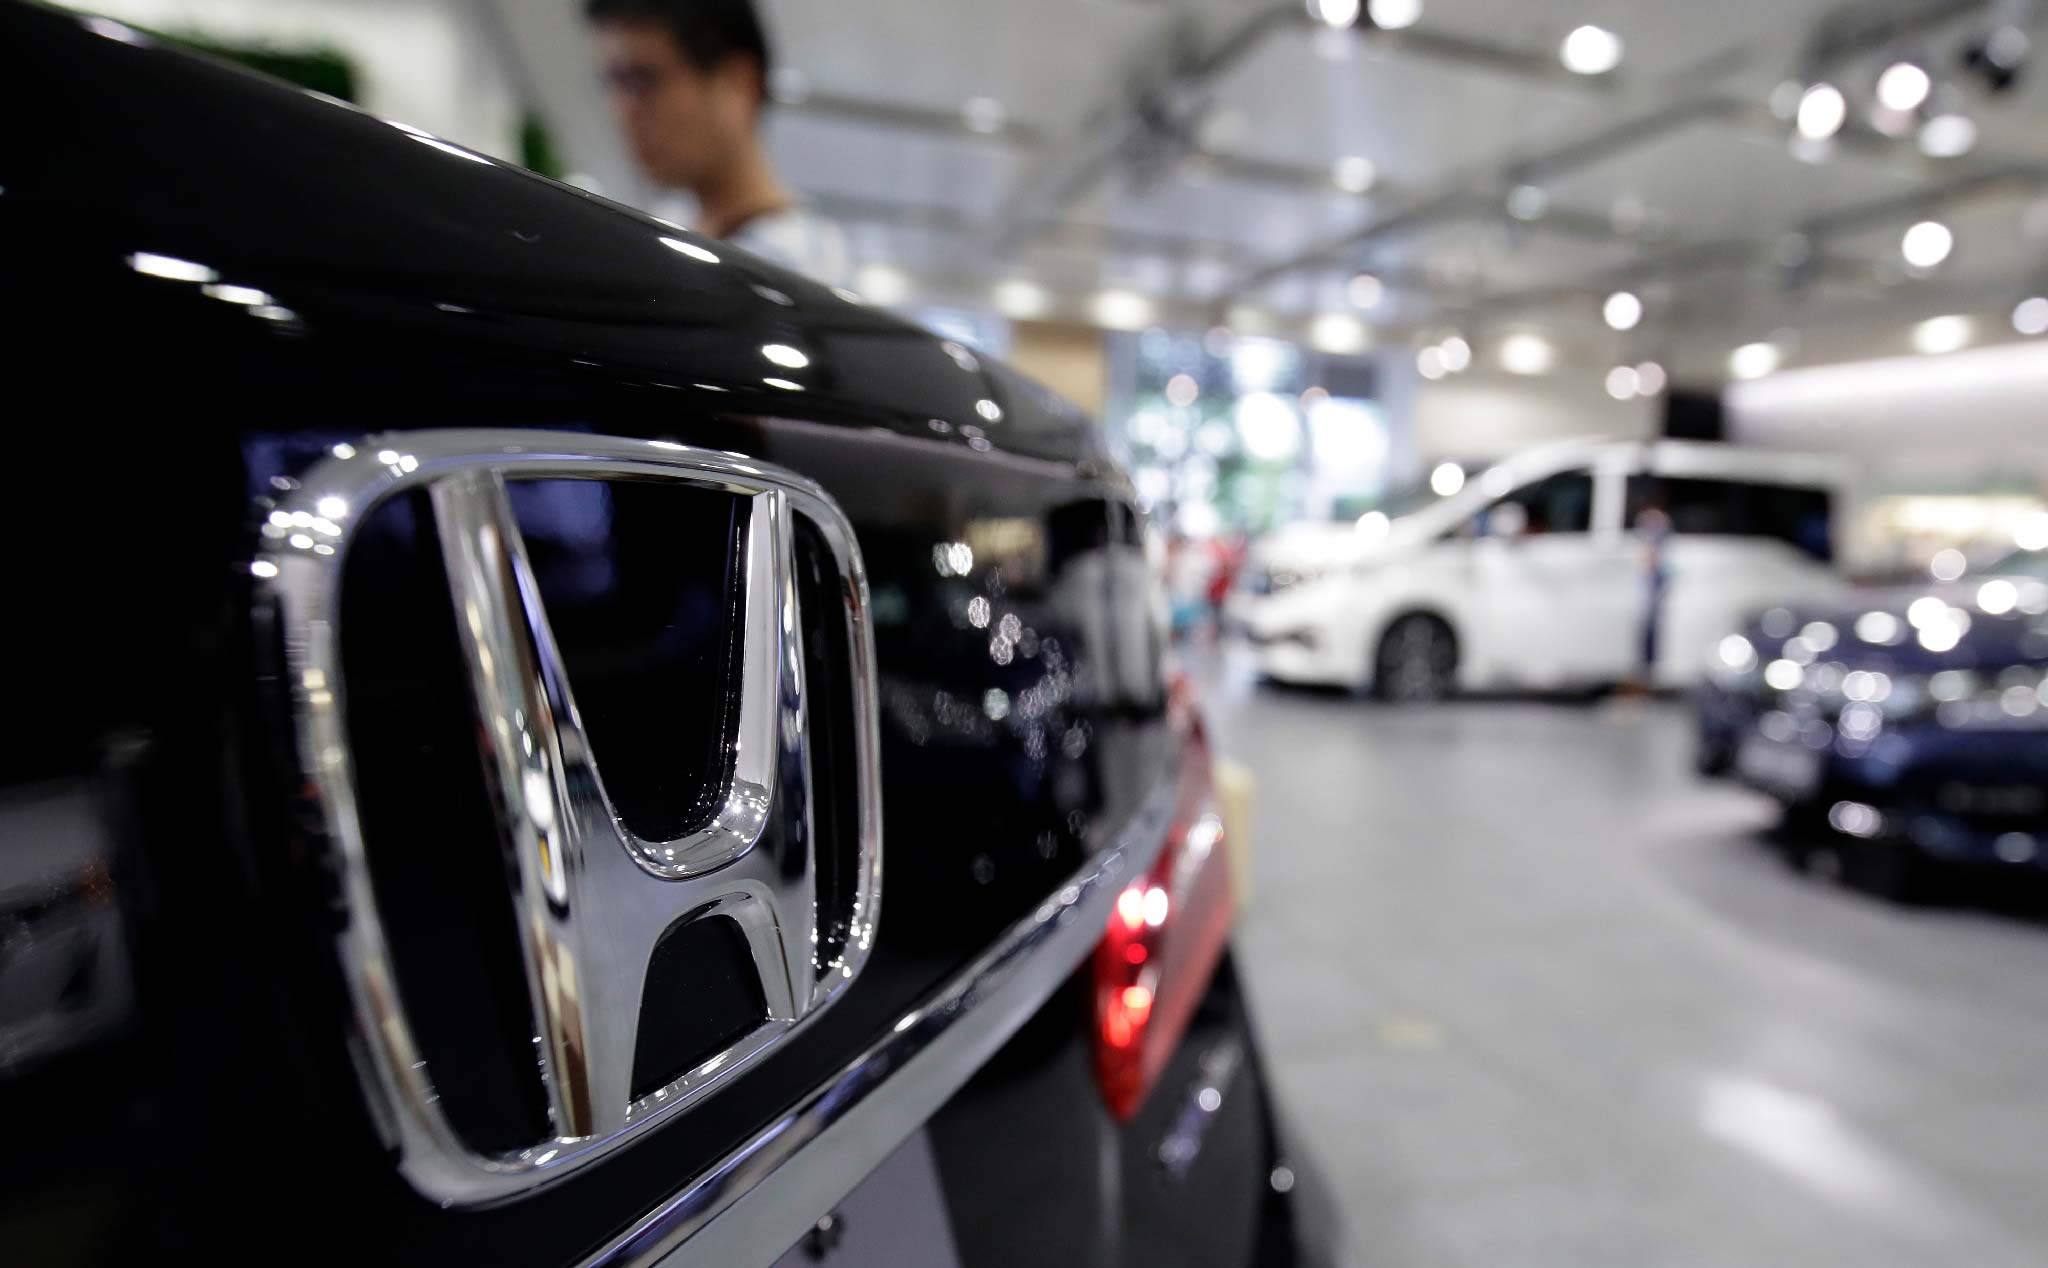 Honda triệu hồi 1,79 triệu xe trên toàn thế giới bởi các vấn đề an toàn